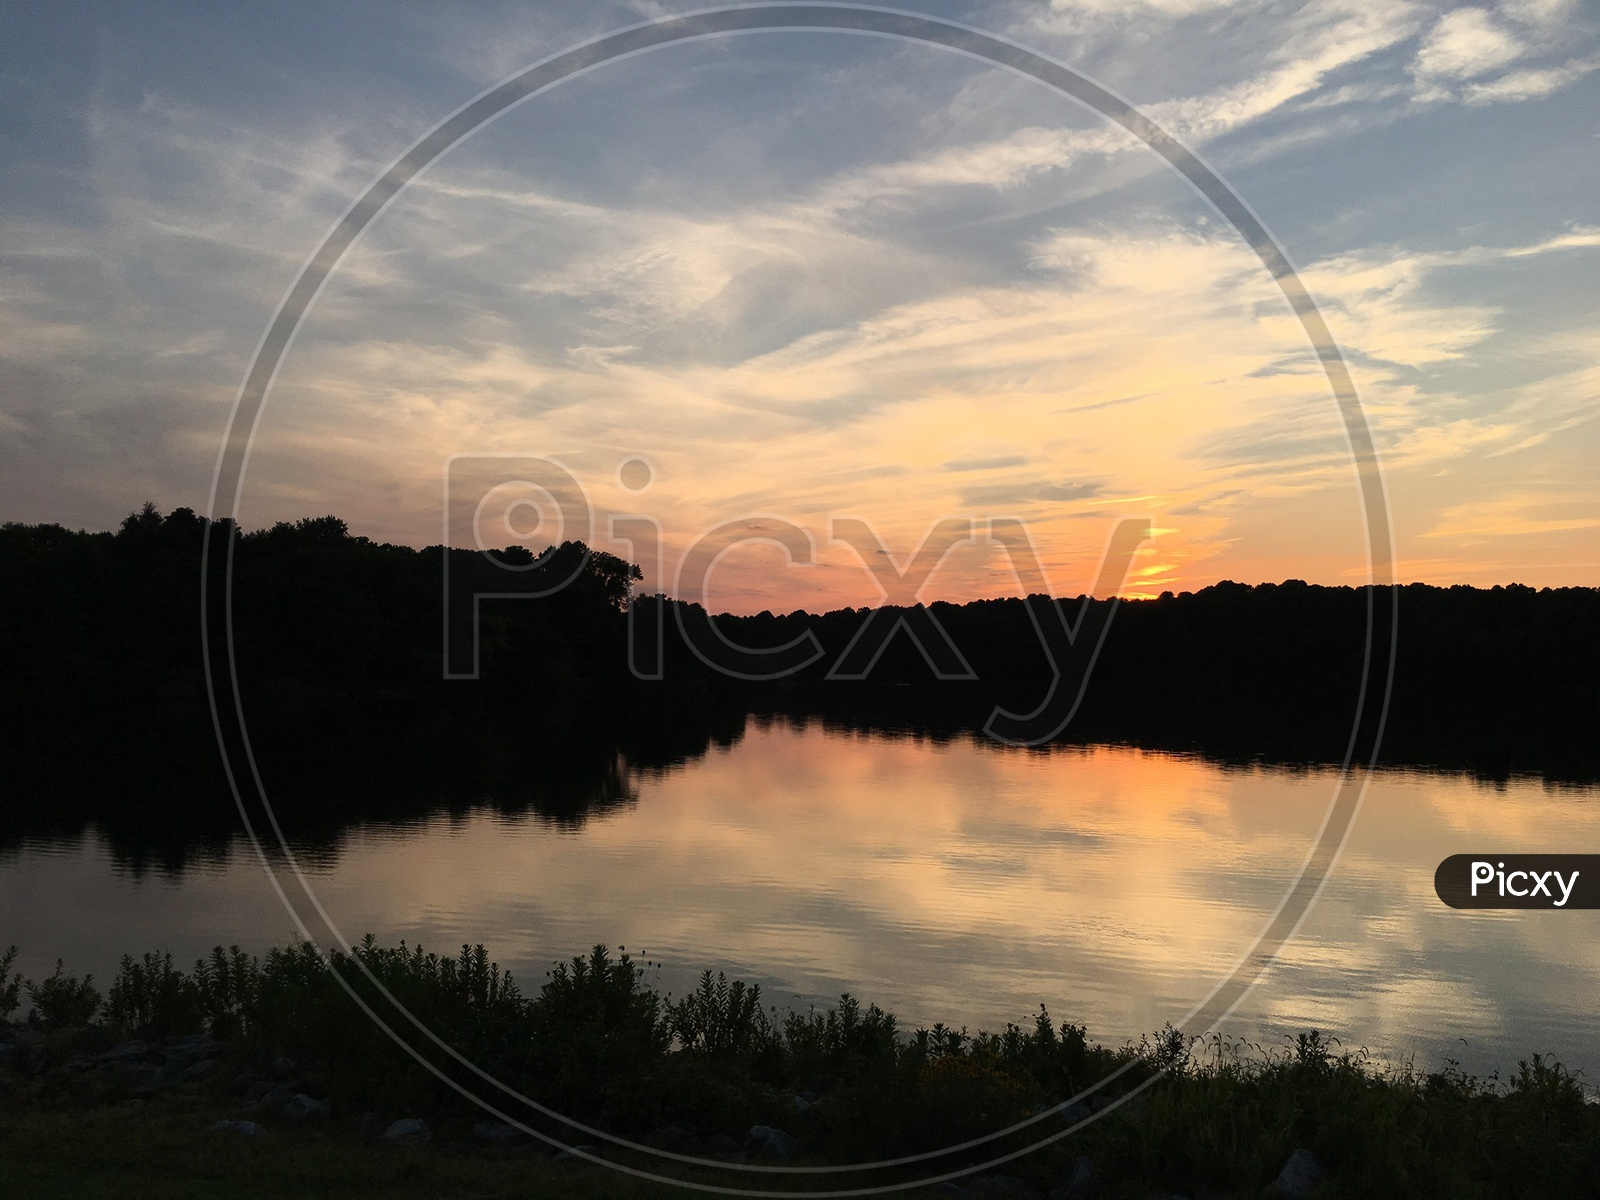 Sun set at lake loop in Maryland, USA